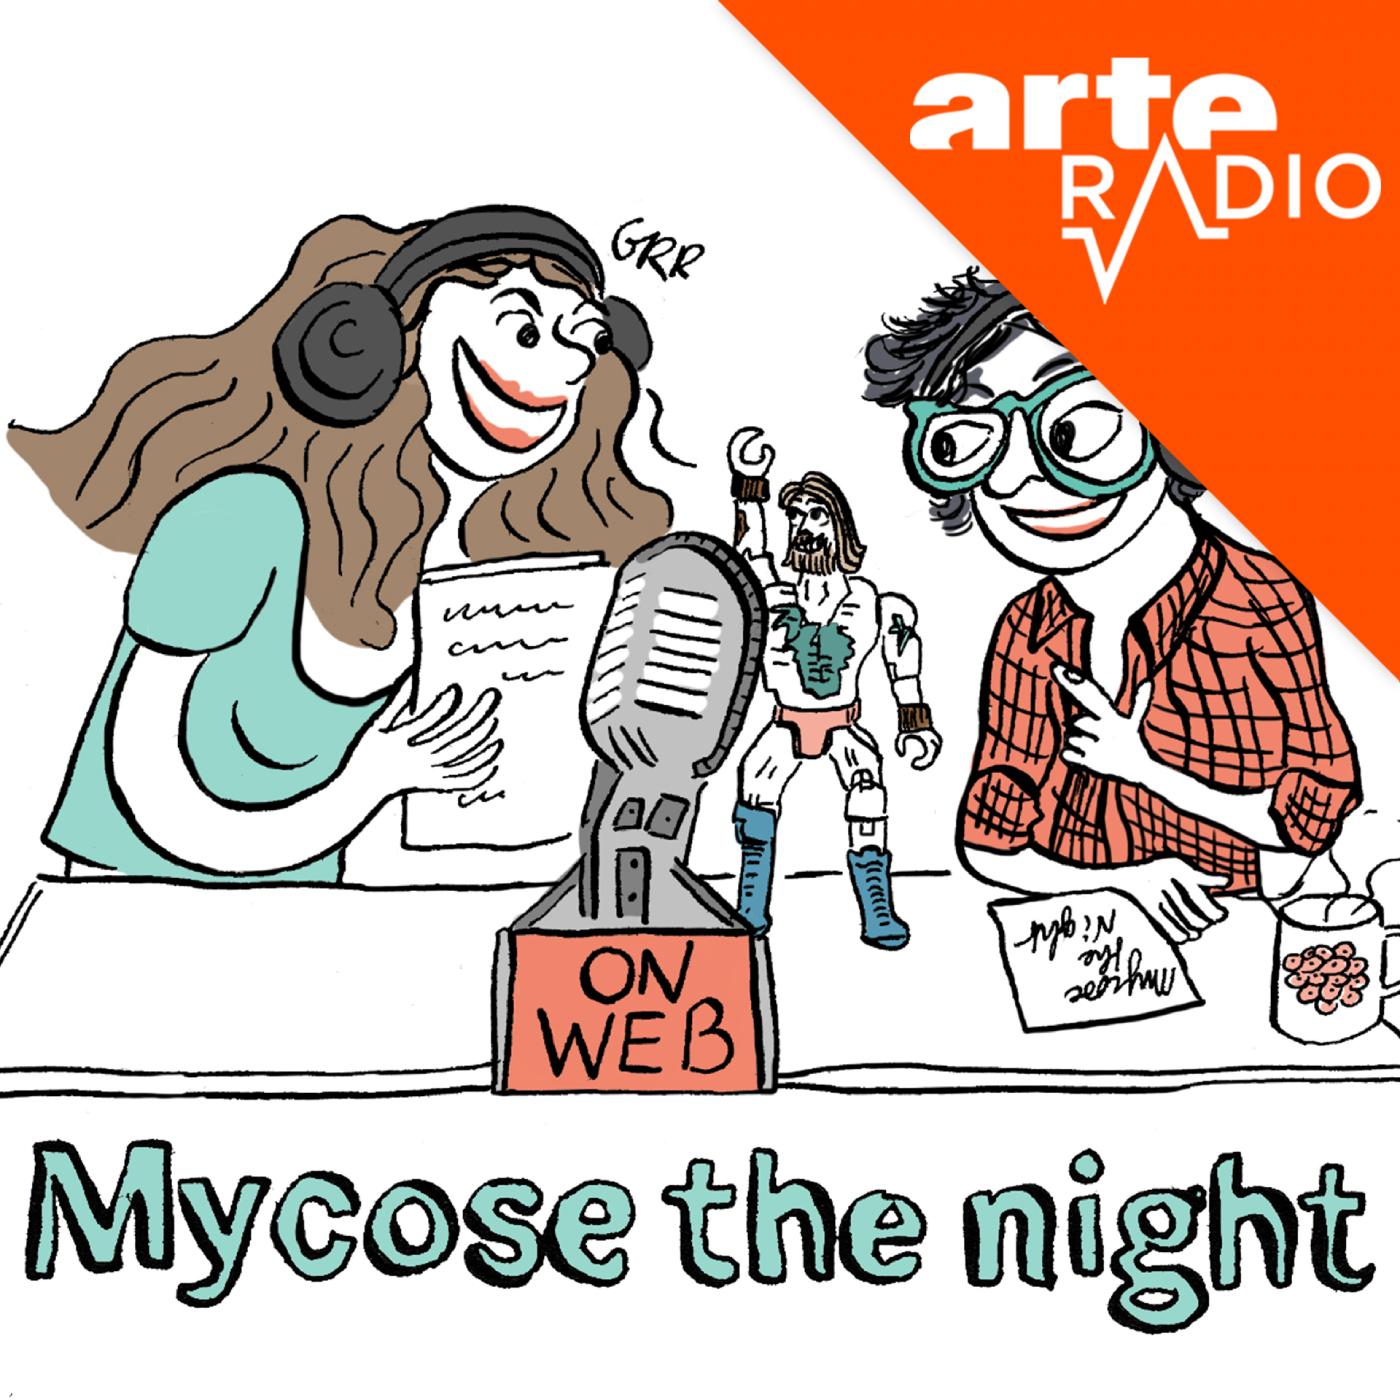 Mycose the night (n°9) : Appel masqué ohé ohé